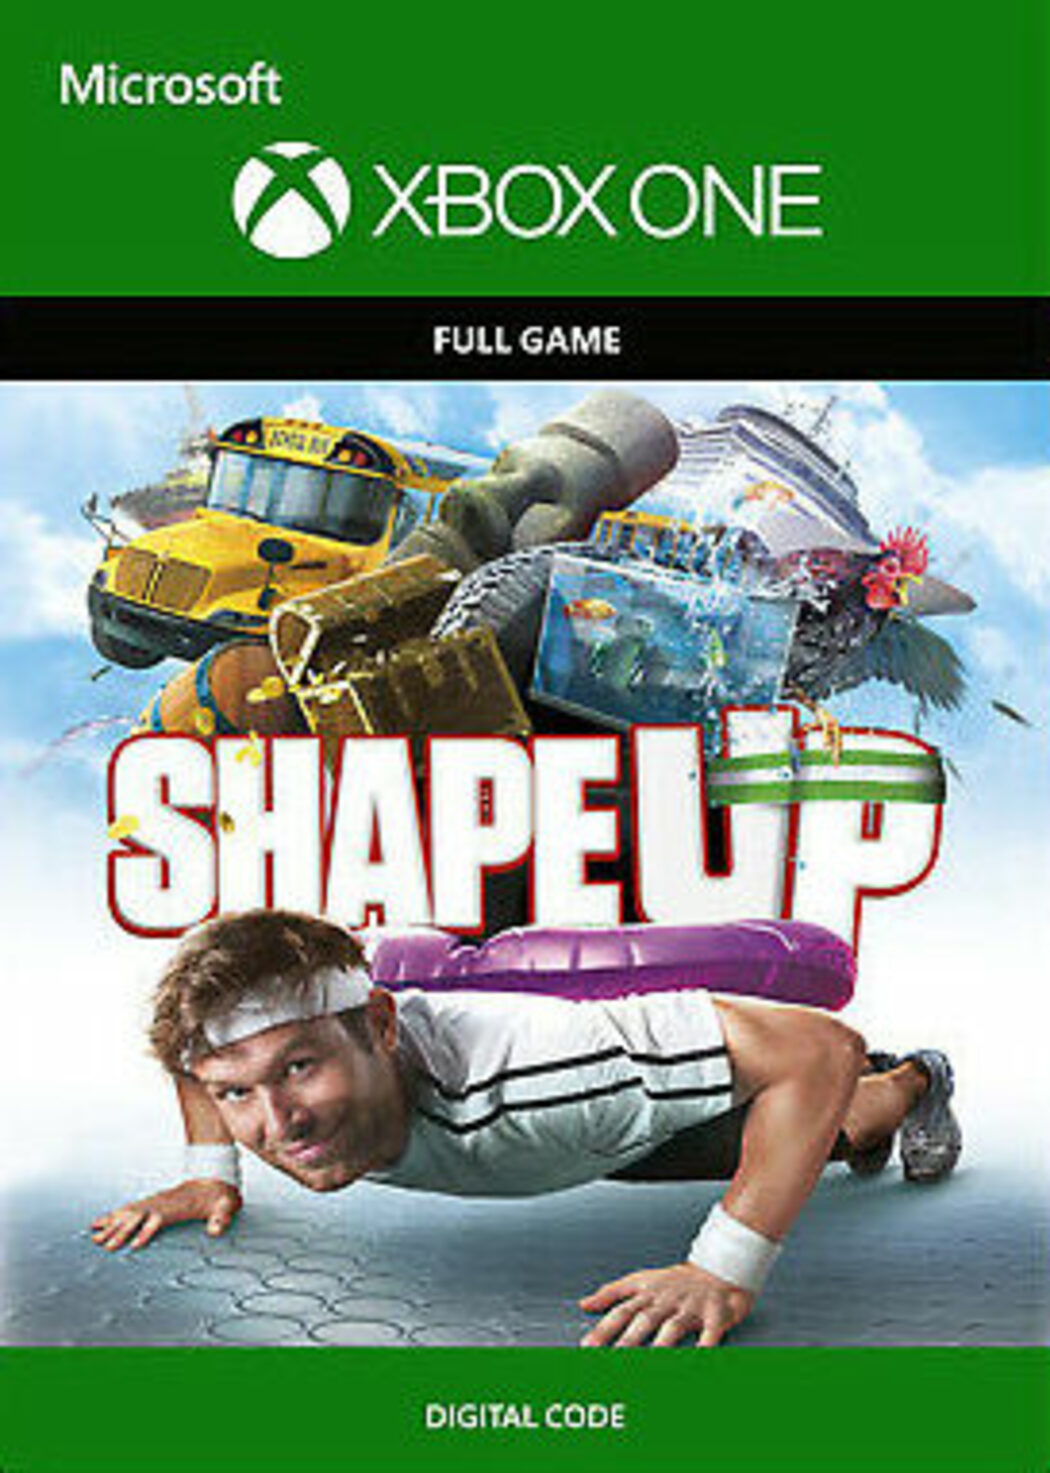 Shape Up - Xbox One 